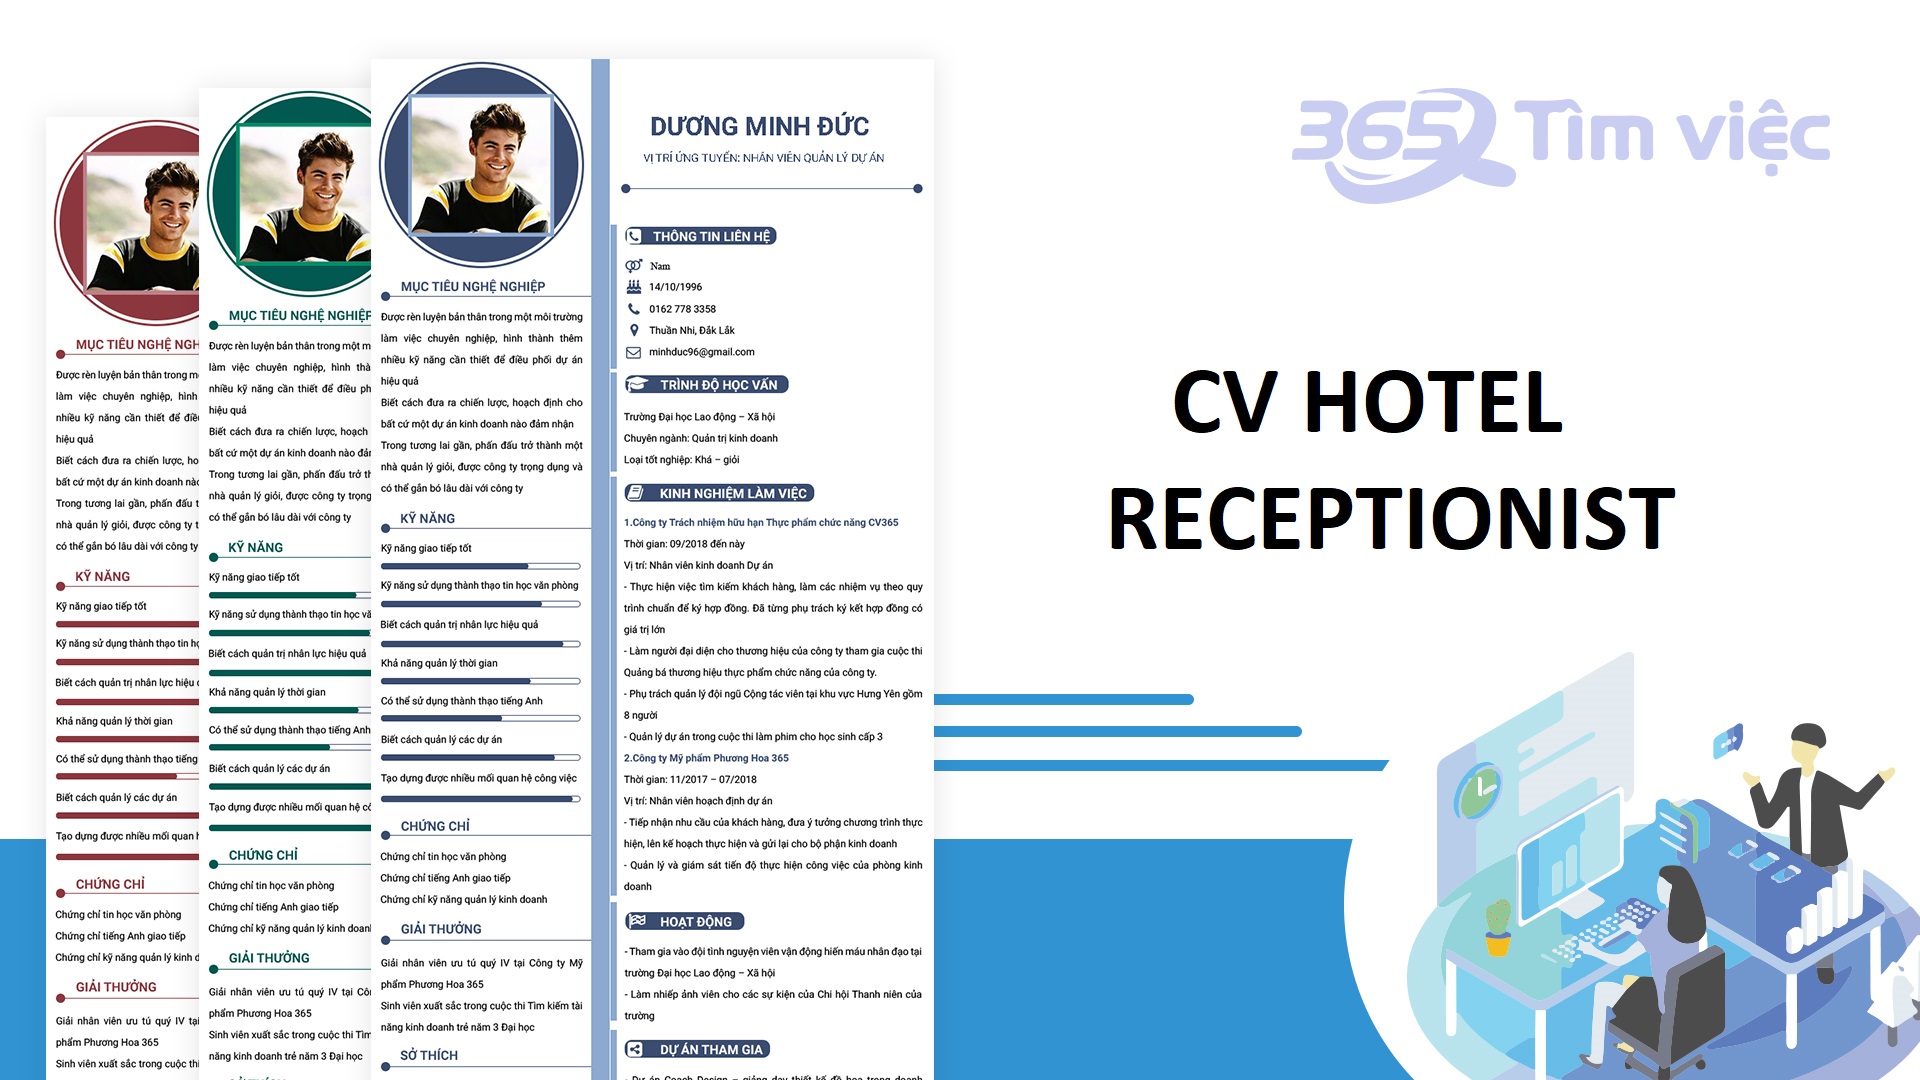 CV hotel receptionist cần chú ý đến hình thức